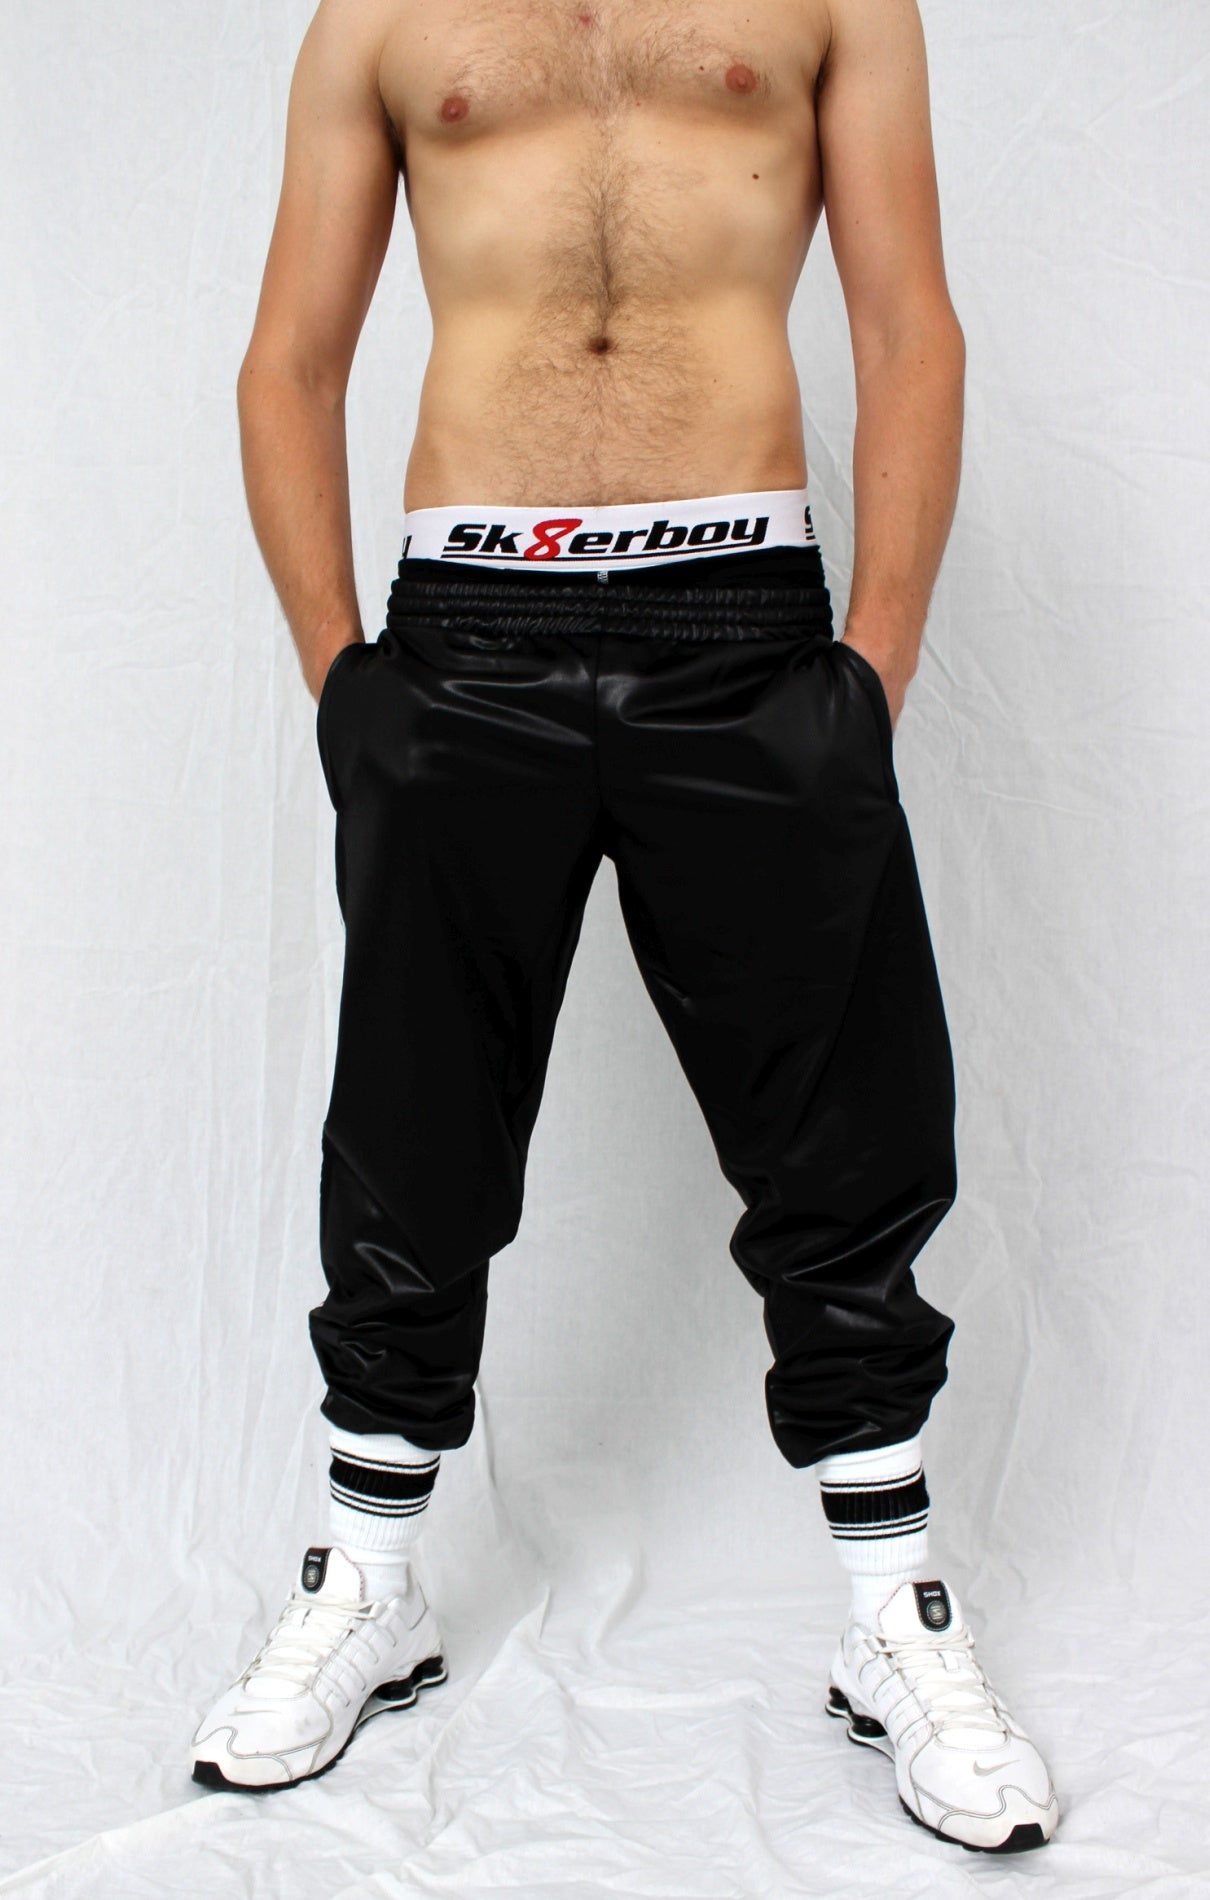 sportlicher junge trägt eine glanz sporthose und eine schwarze boxershort darunter von der der weisse bund mit großem sk8erboy logo heraus schaut in nike shox sneaker und sk8erboy deluxe socken